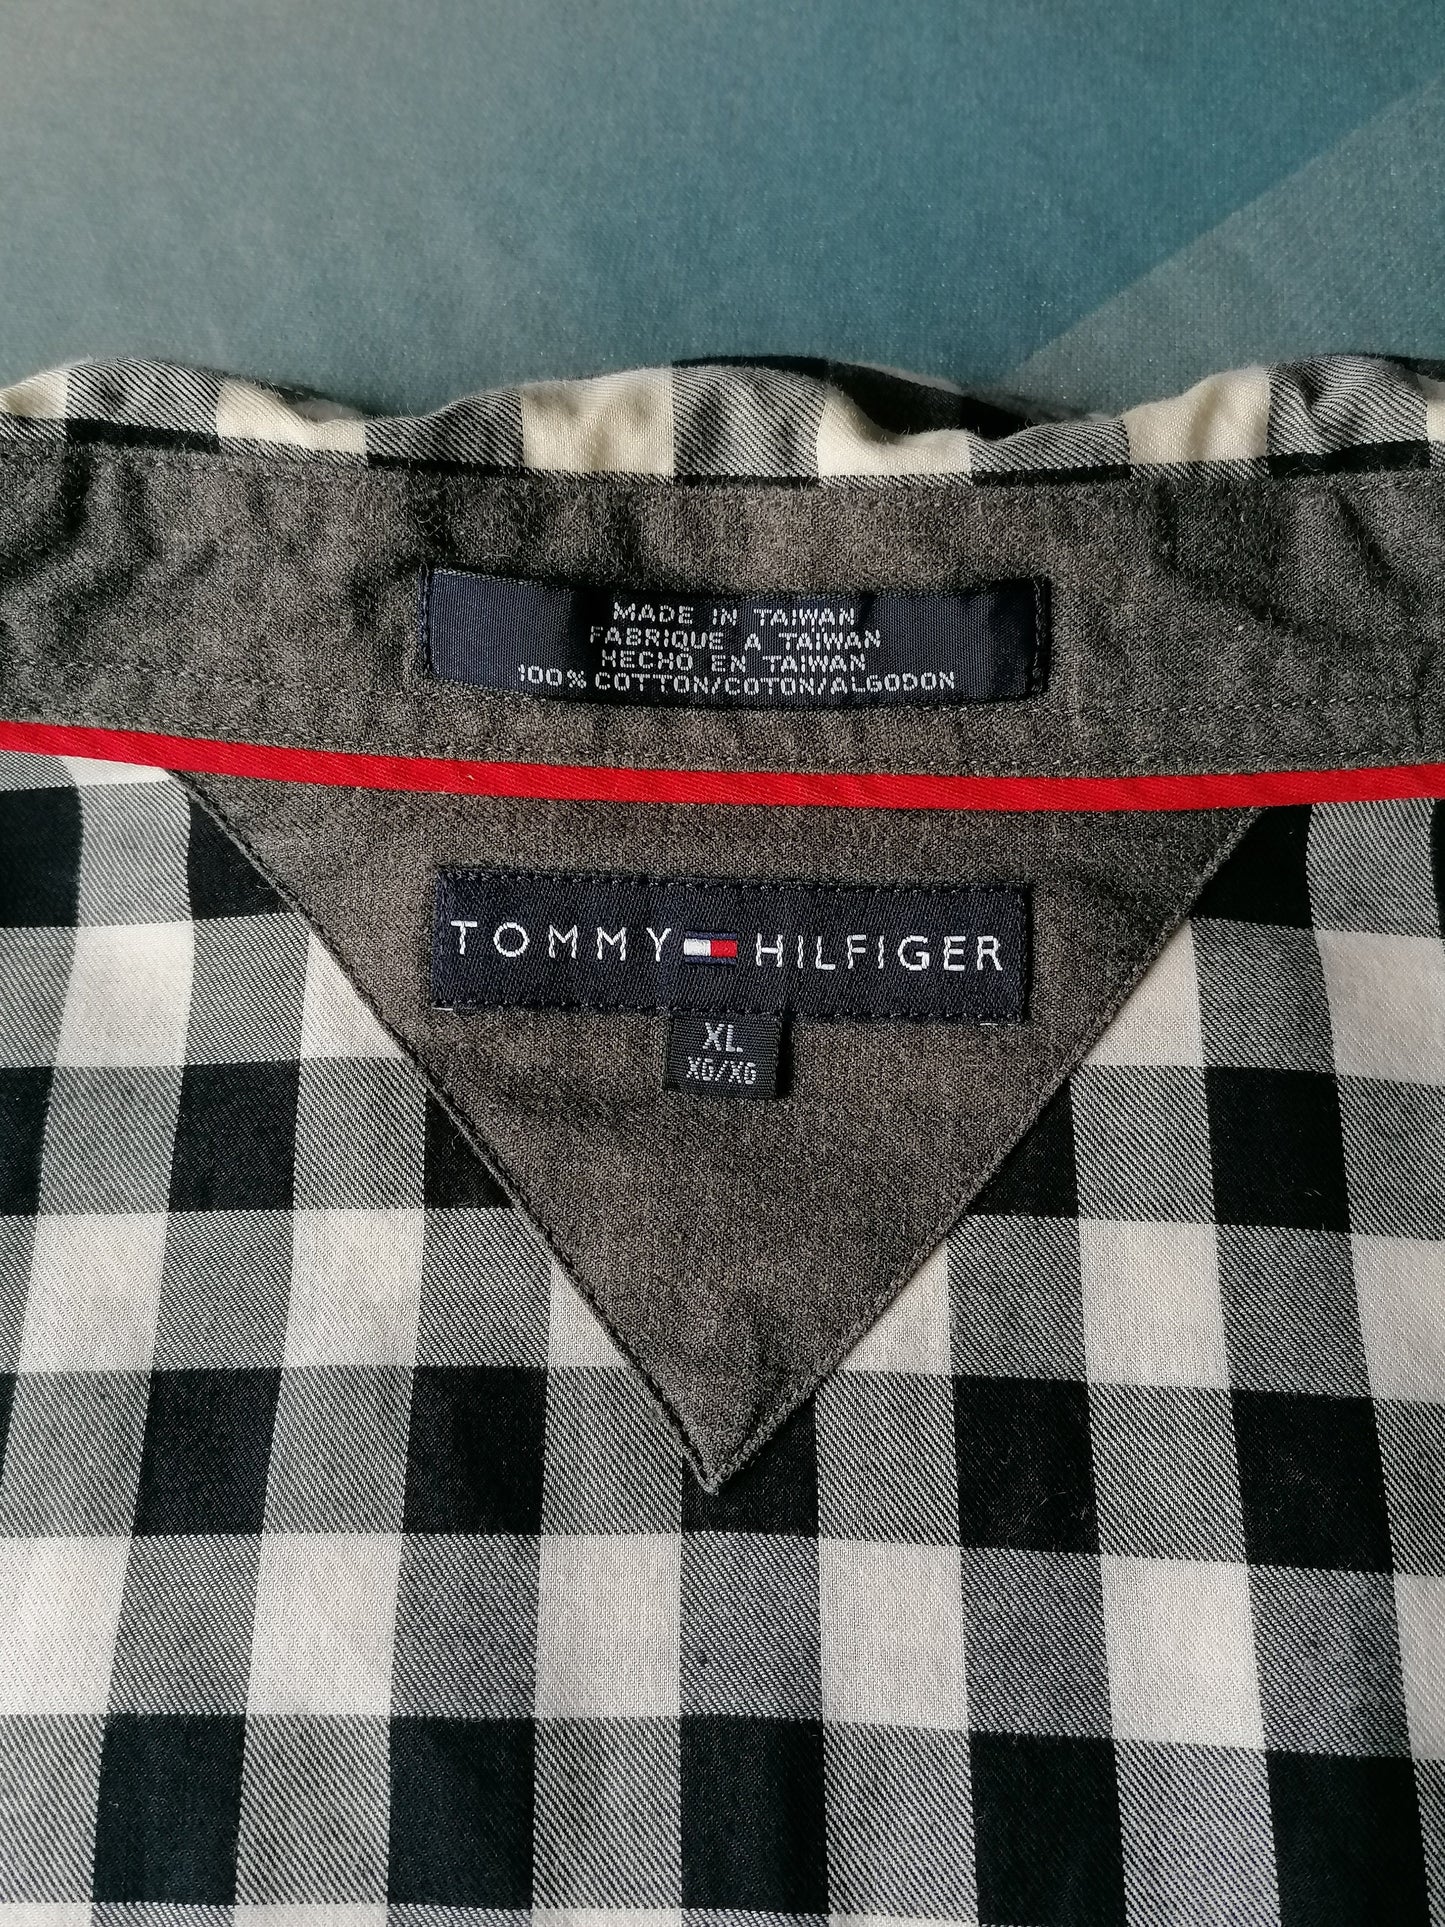 Camisa Tommy Hilfiger con tachuelas de prensa. Blanco negro a cuadros. Tamaño XL.